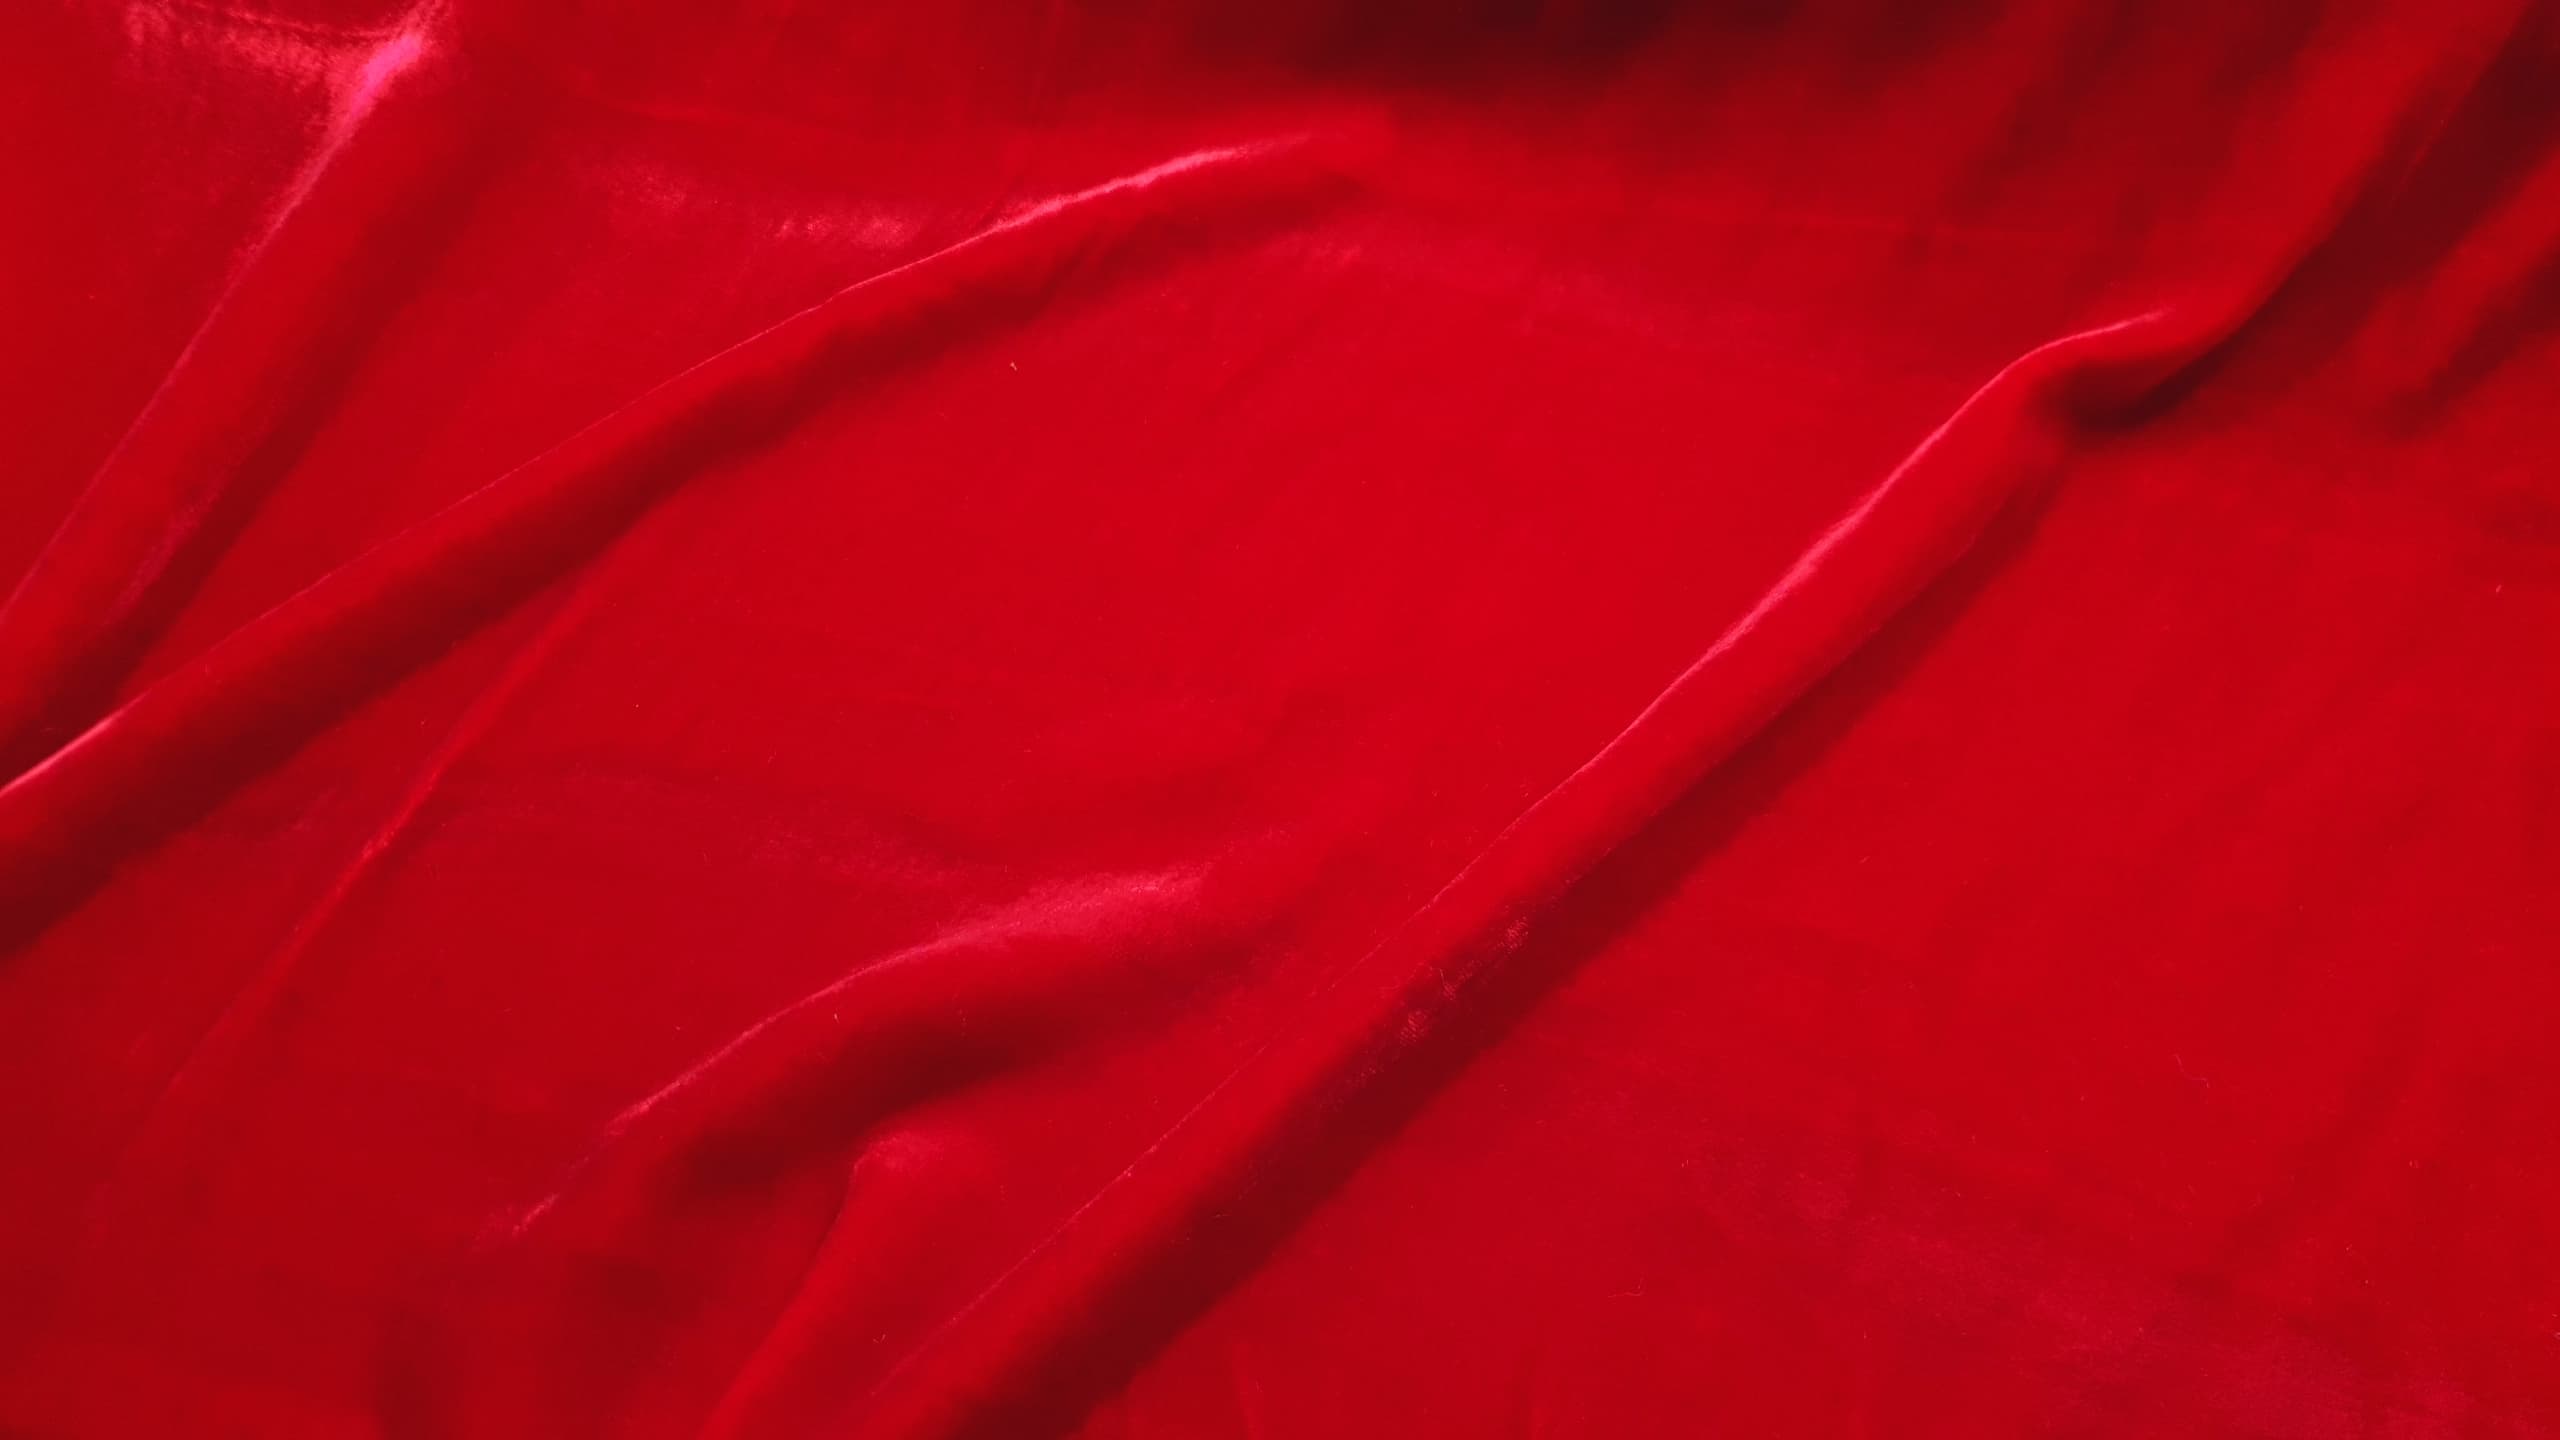 Silk Velvet-red